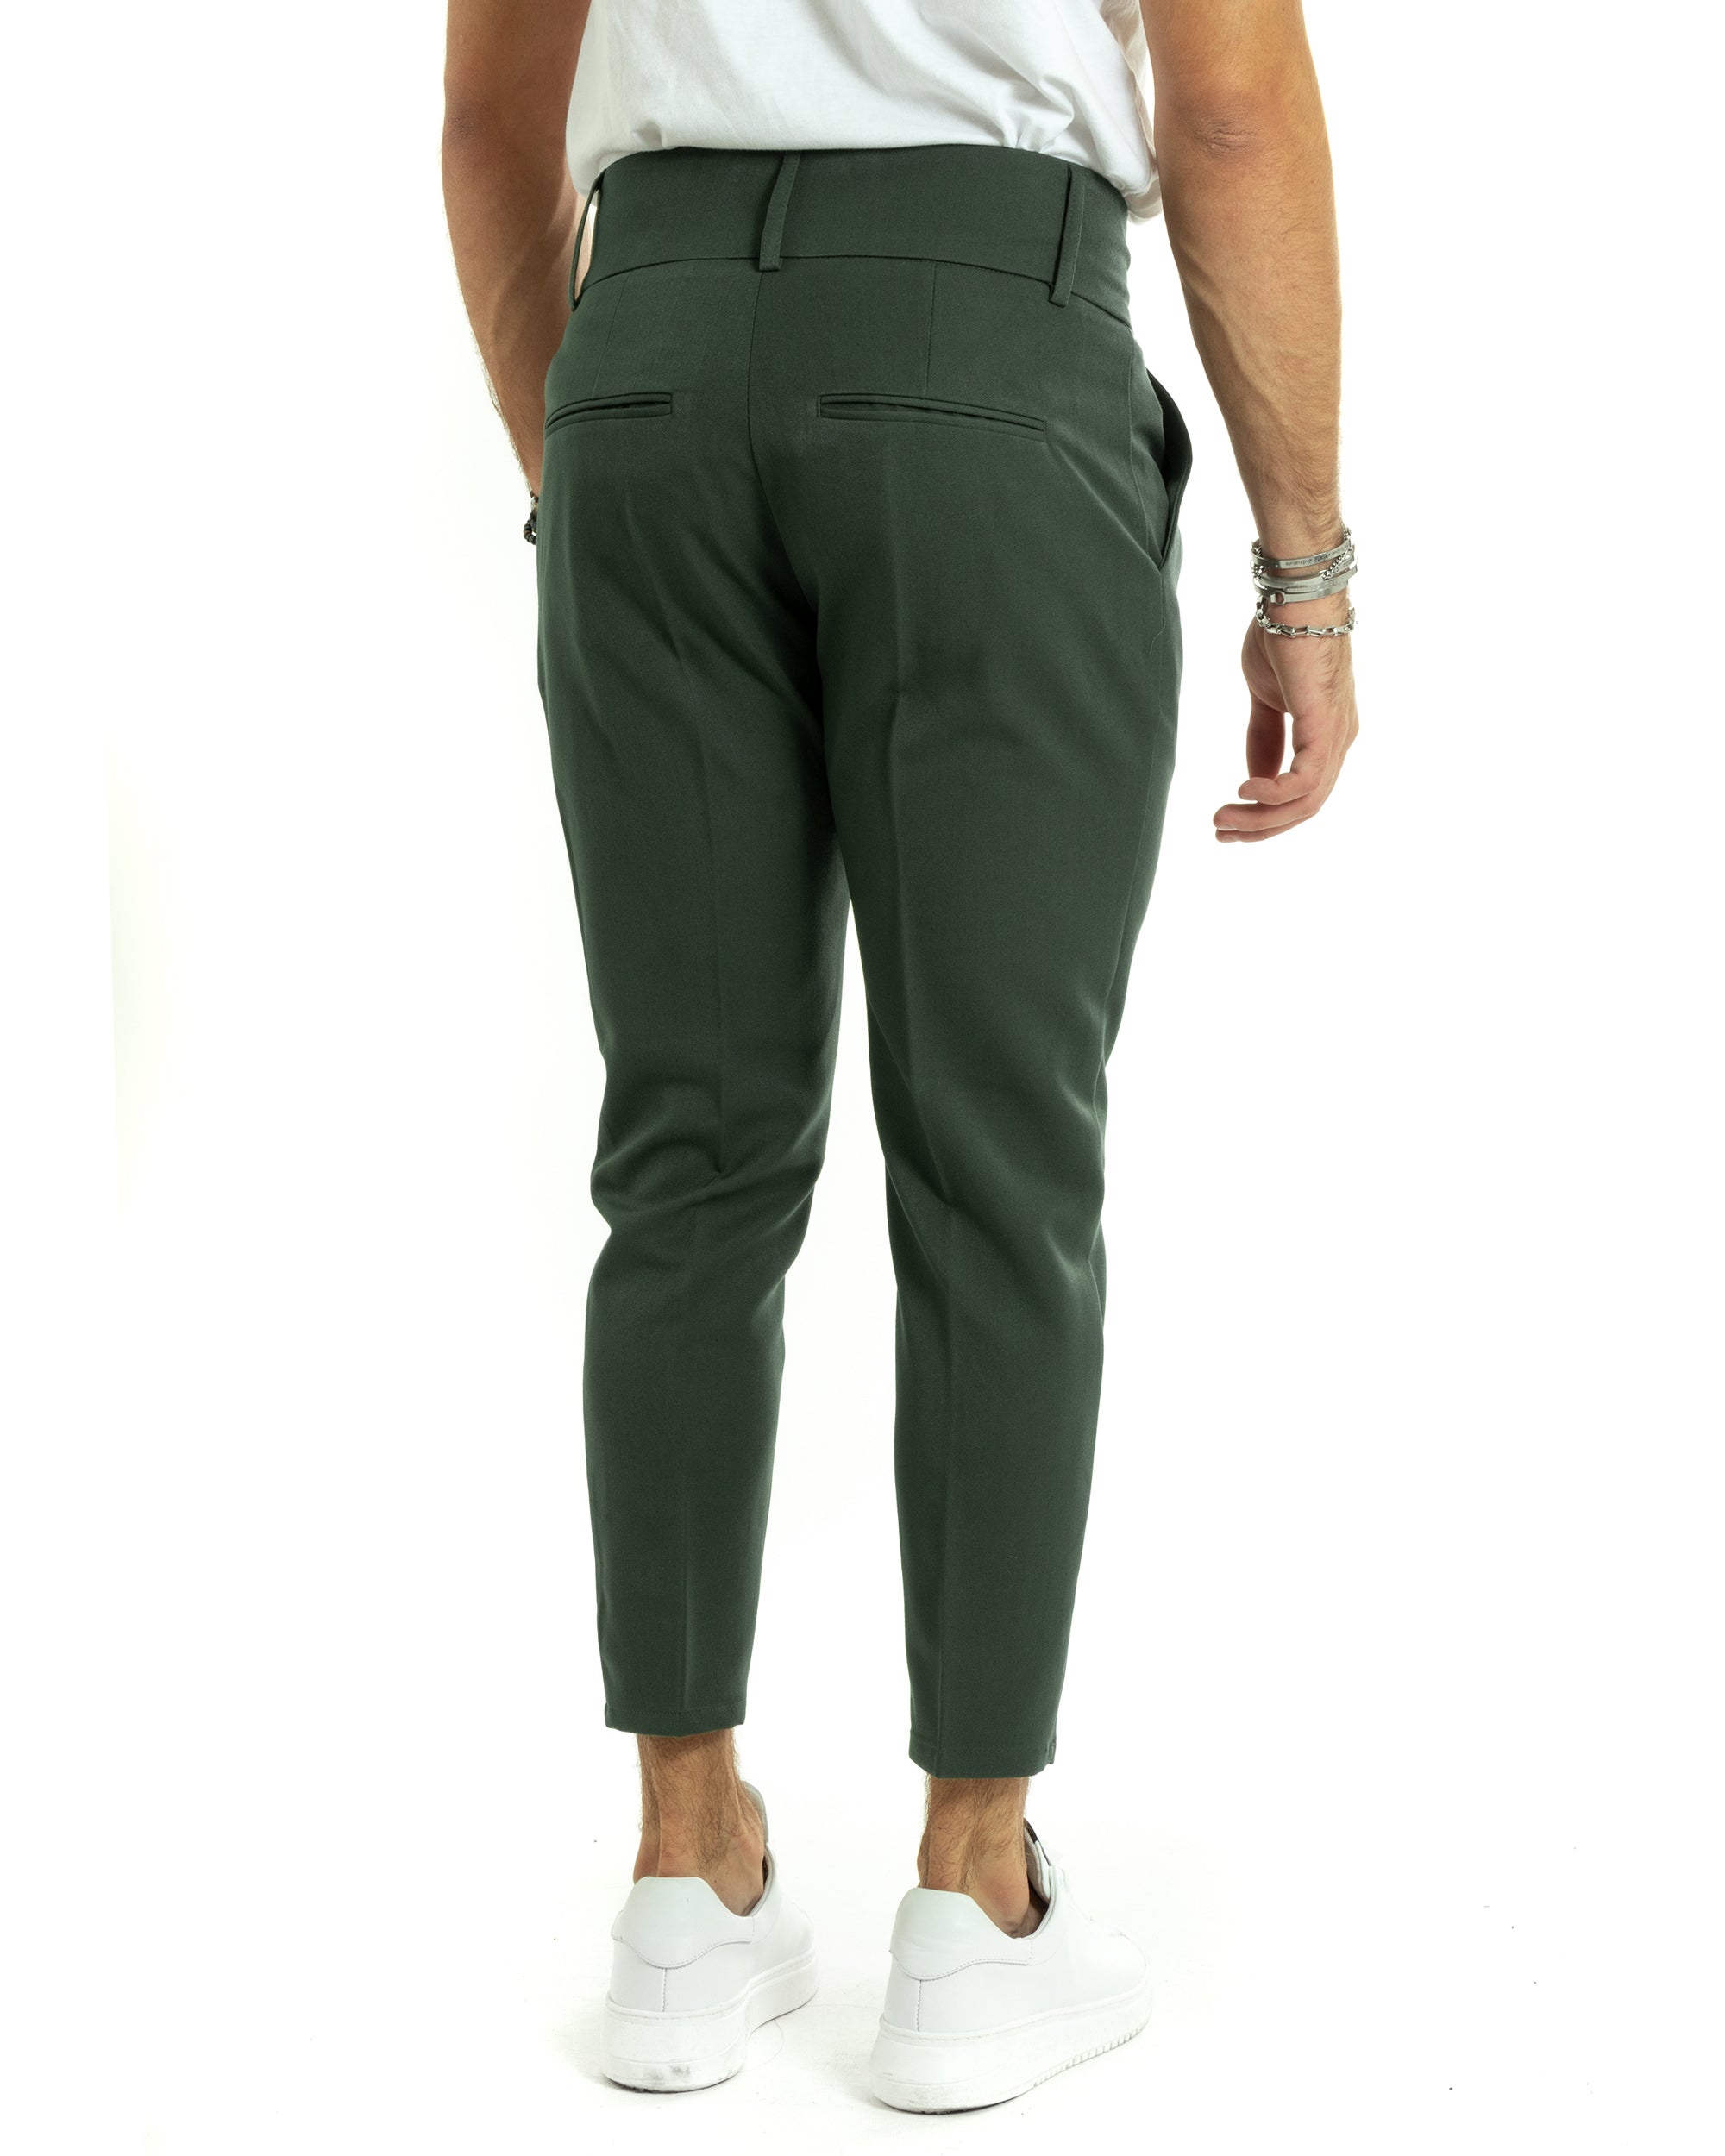 Pantaloni Uomo Viscosa Tasca America Vita Alta Classico Pinces Abbottonatura Allungata Casual Verde GIOSAL-P6018A